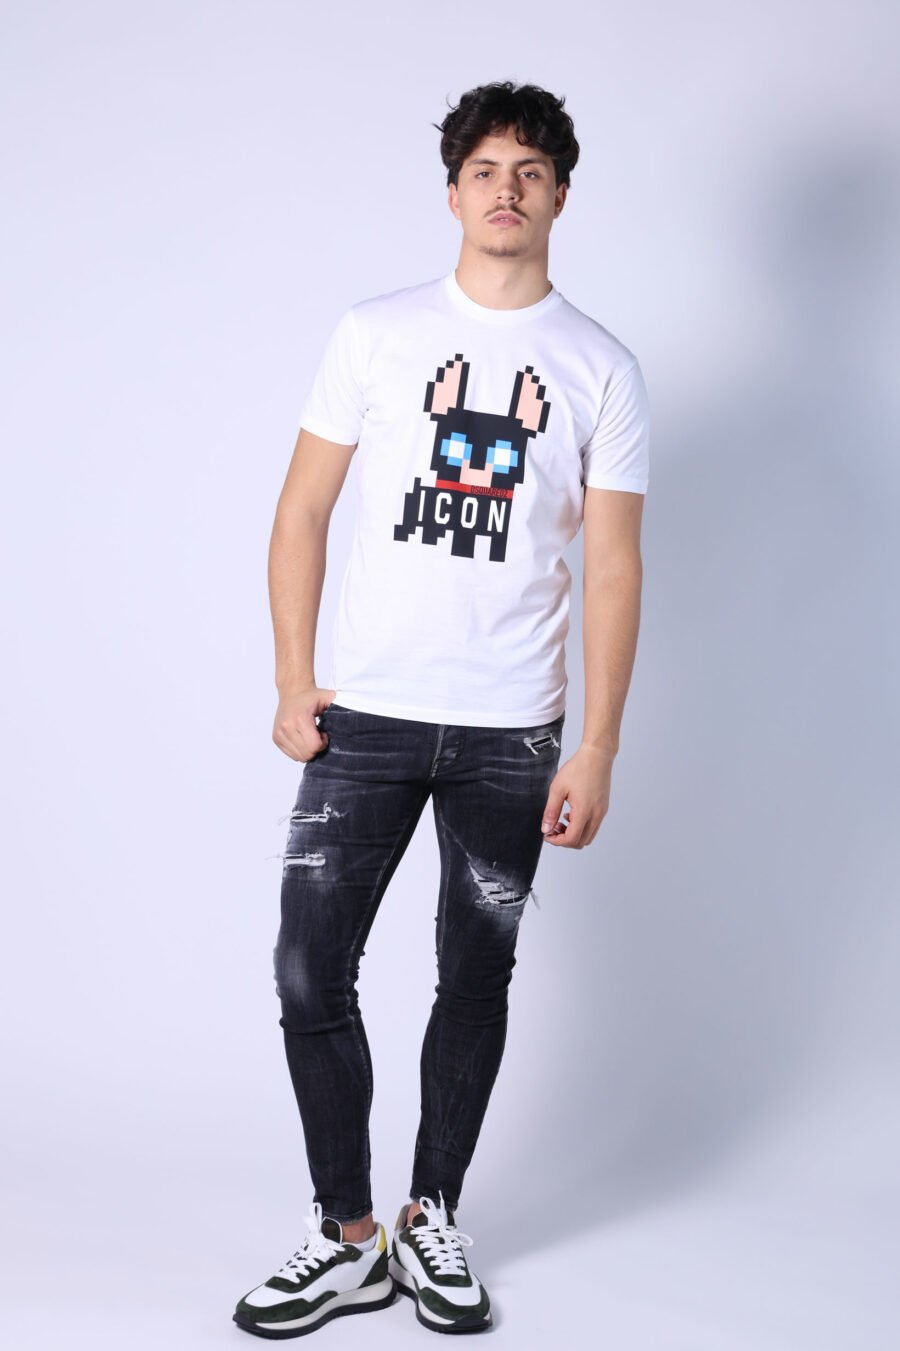 Weißes T-Shirt mit Hunde-Maxi-Logo "Pixeled" - Untitled Catalog 05336